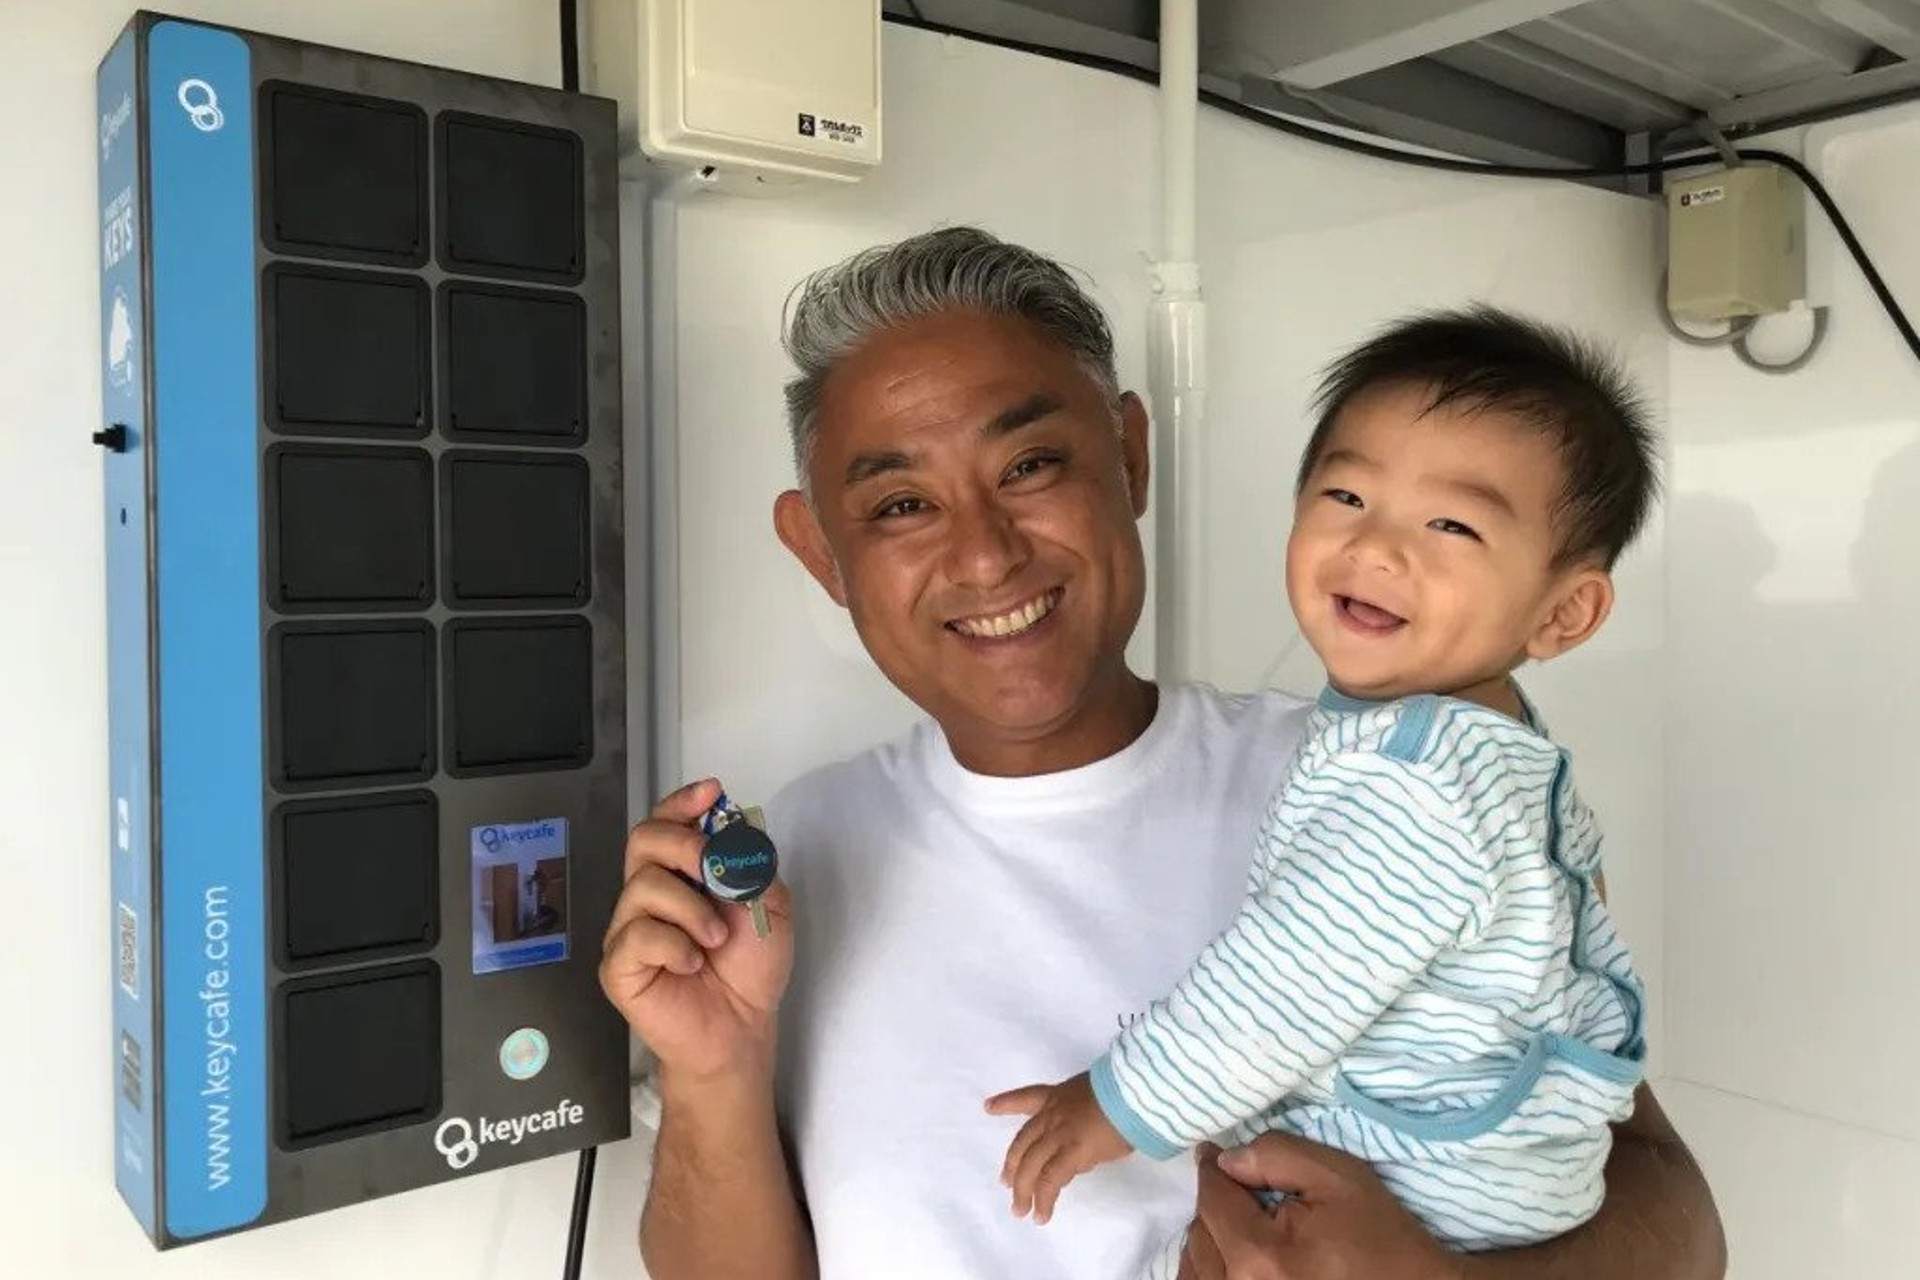 Uruma Dome in Okinawa nutzt Keycafe zum Einchecken von Gästen